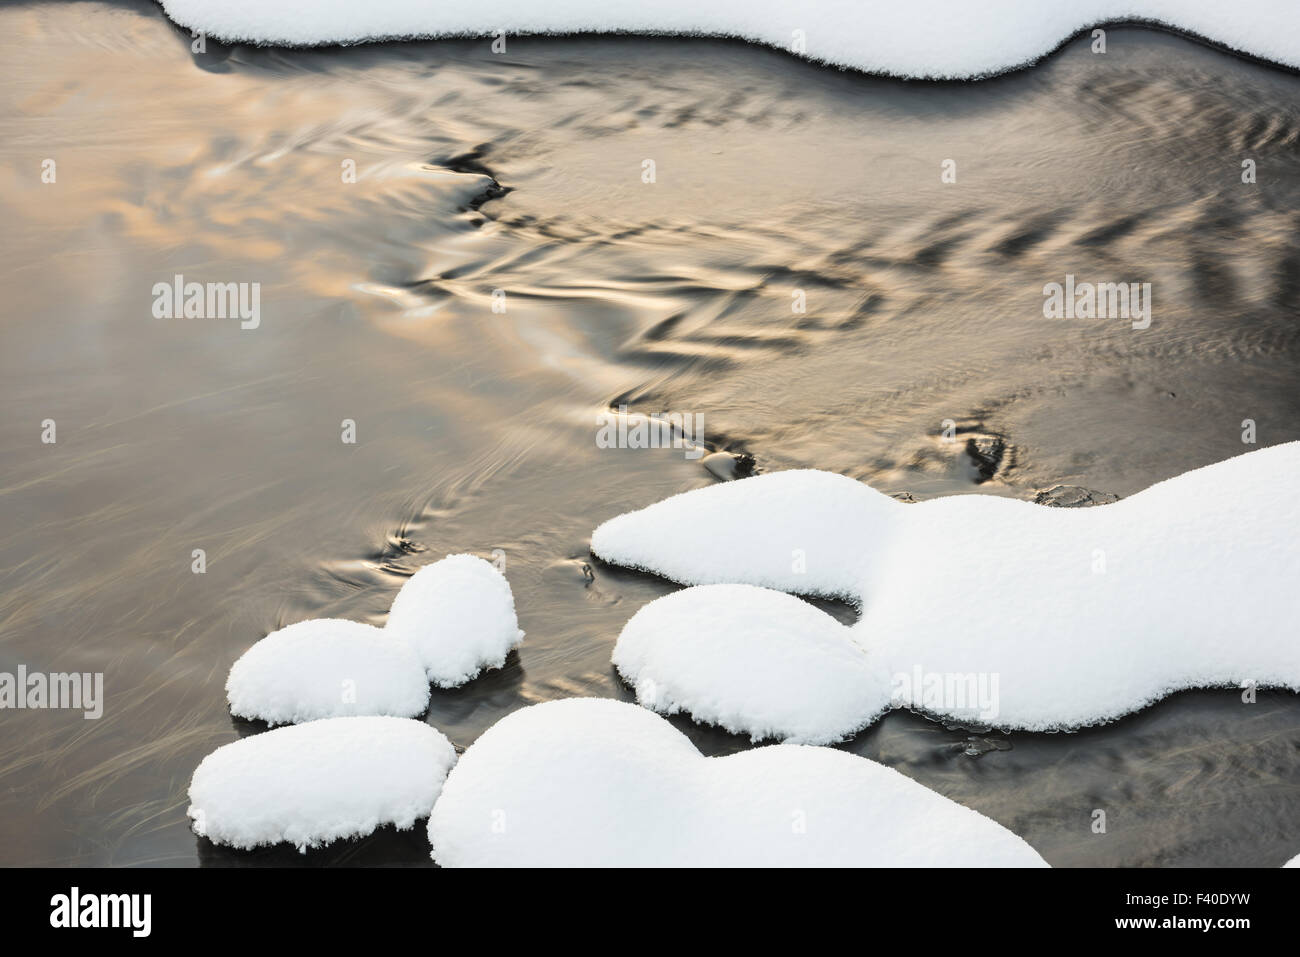 snow covered stones, Lapland, Sweden Stock Photo